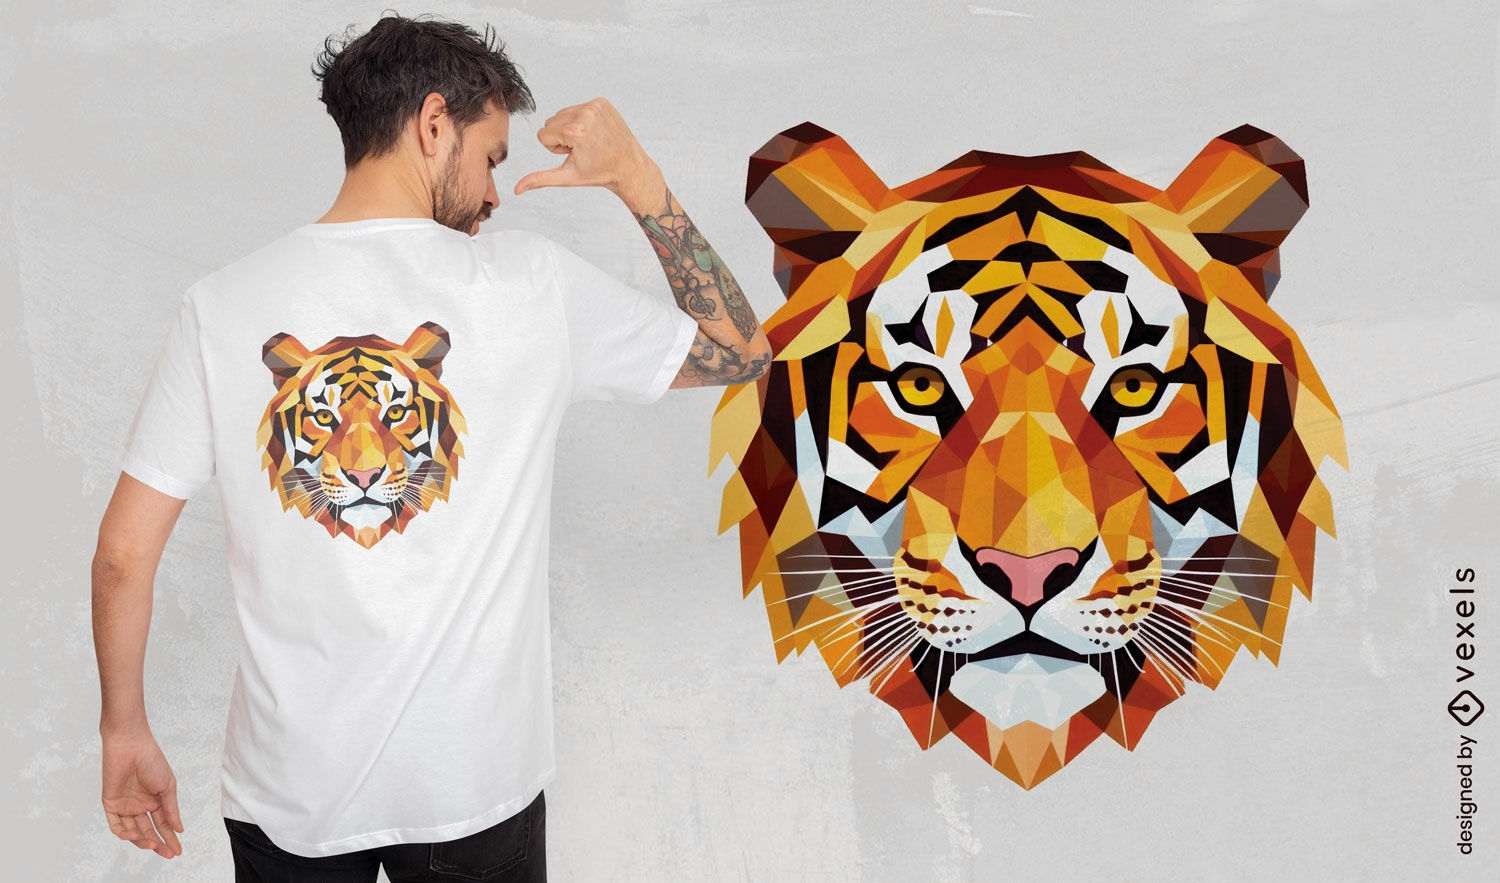 Diseño de camiseta con cara de tigre geométrica.